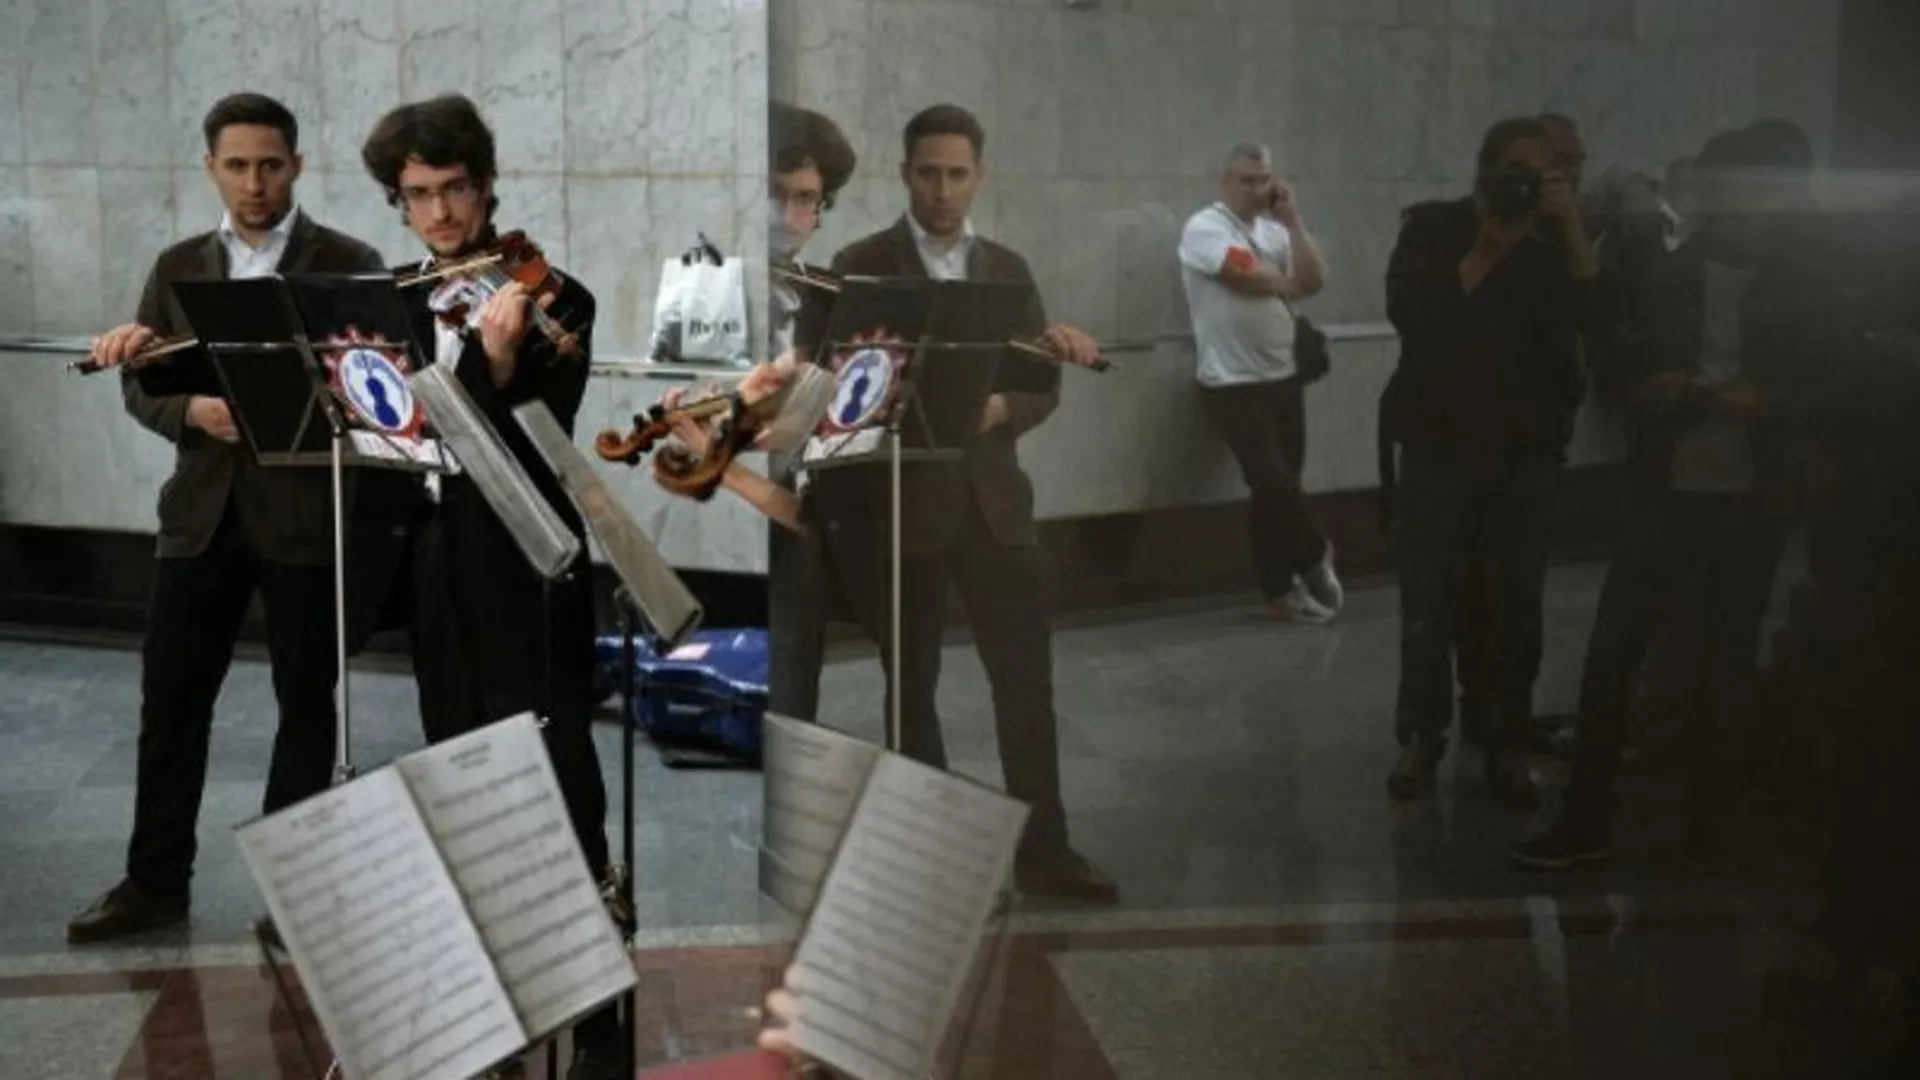 Тридцати музыкантам и коллективам разрешили выступать в московском метро